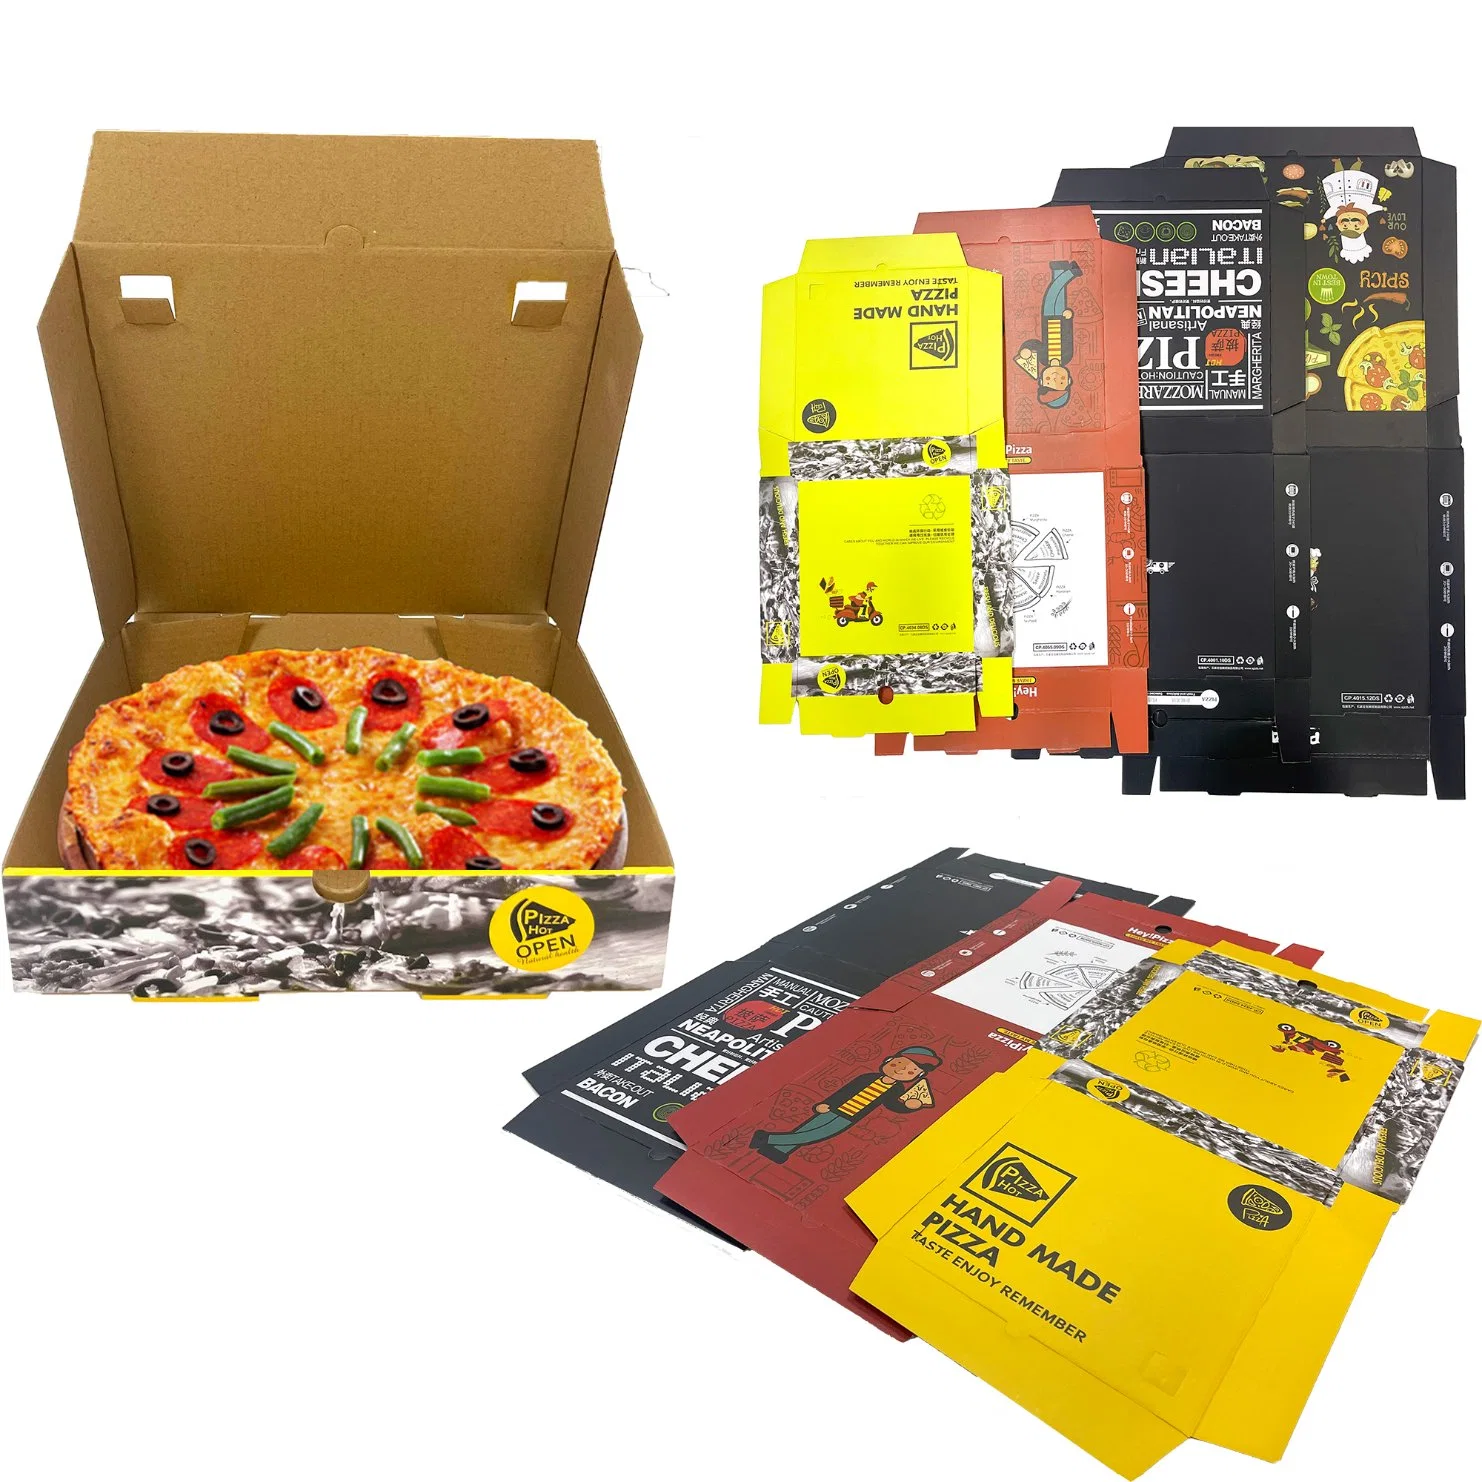 Isolierte Pizza Boxen Paket Karton Lieferant Custom Design Gedruckte Verpackung Bulk Günstige Pizza Boxen mit Logo Großhandel